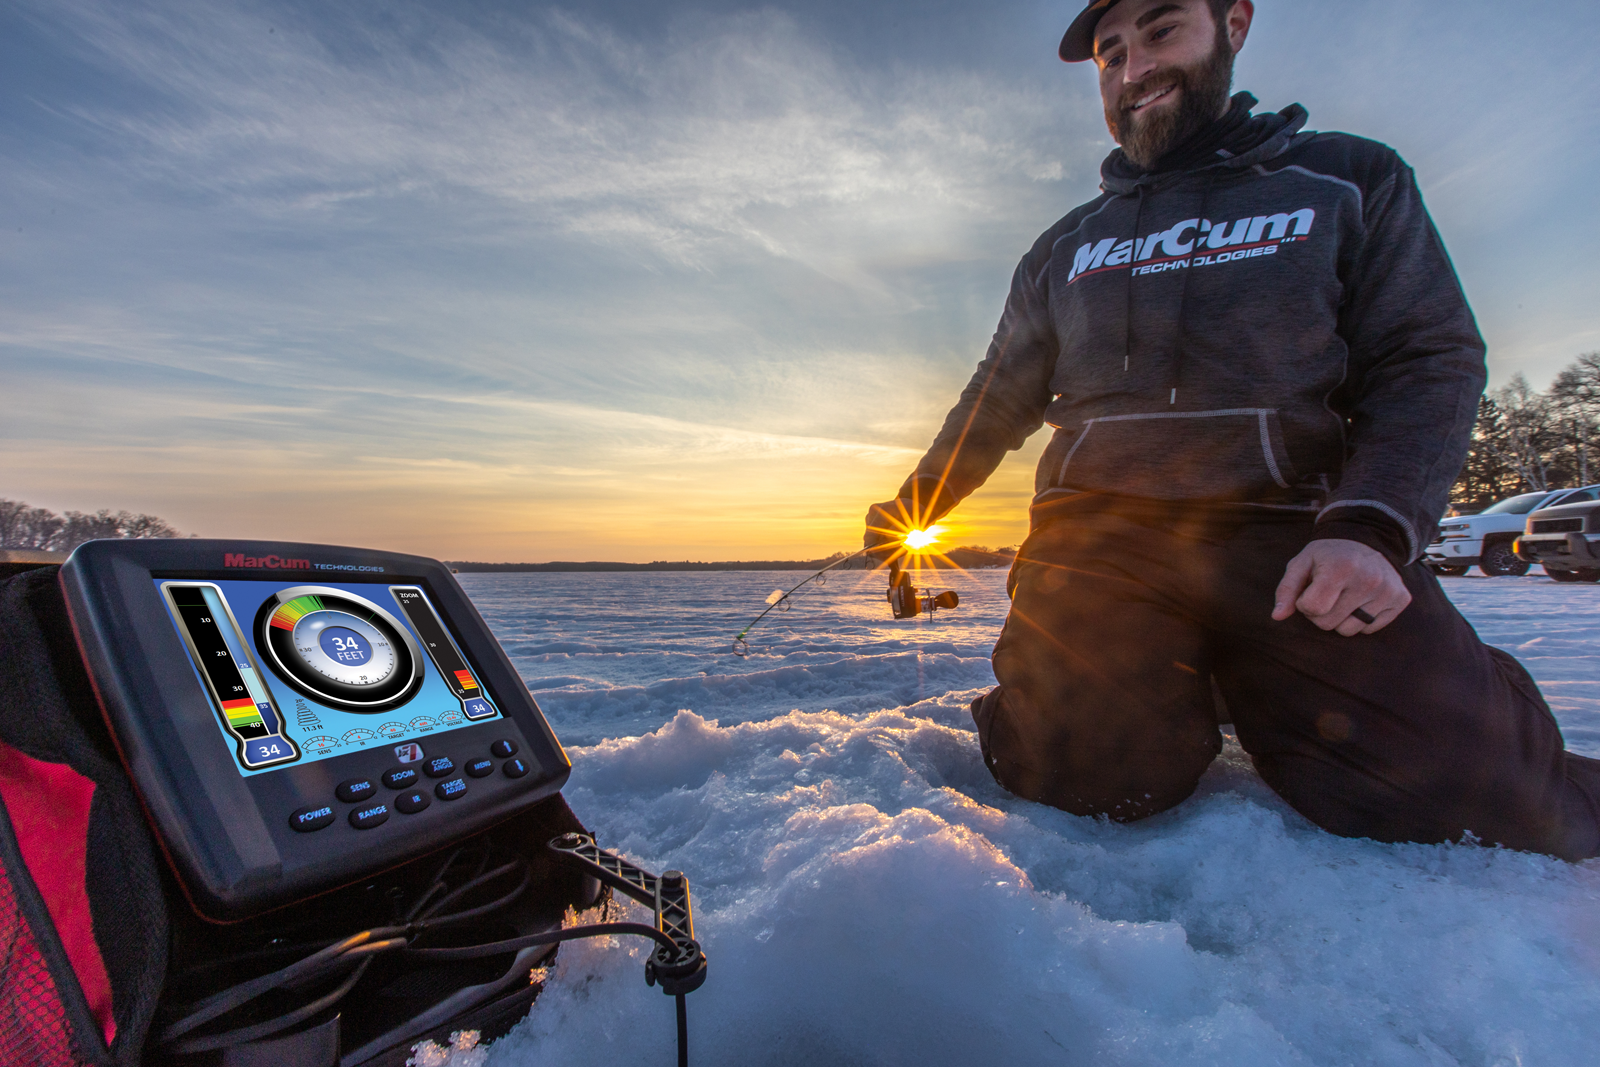 MarCum LX-7L Digital Ice Fishing Sonar System